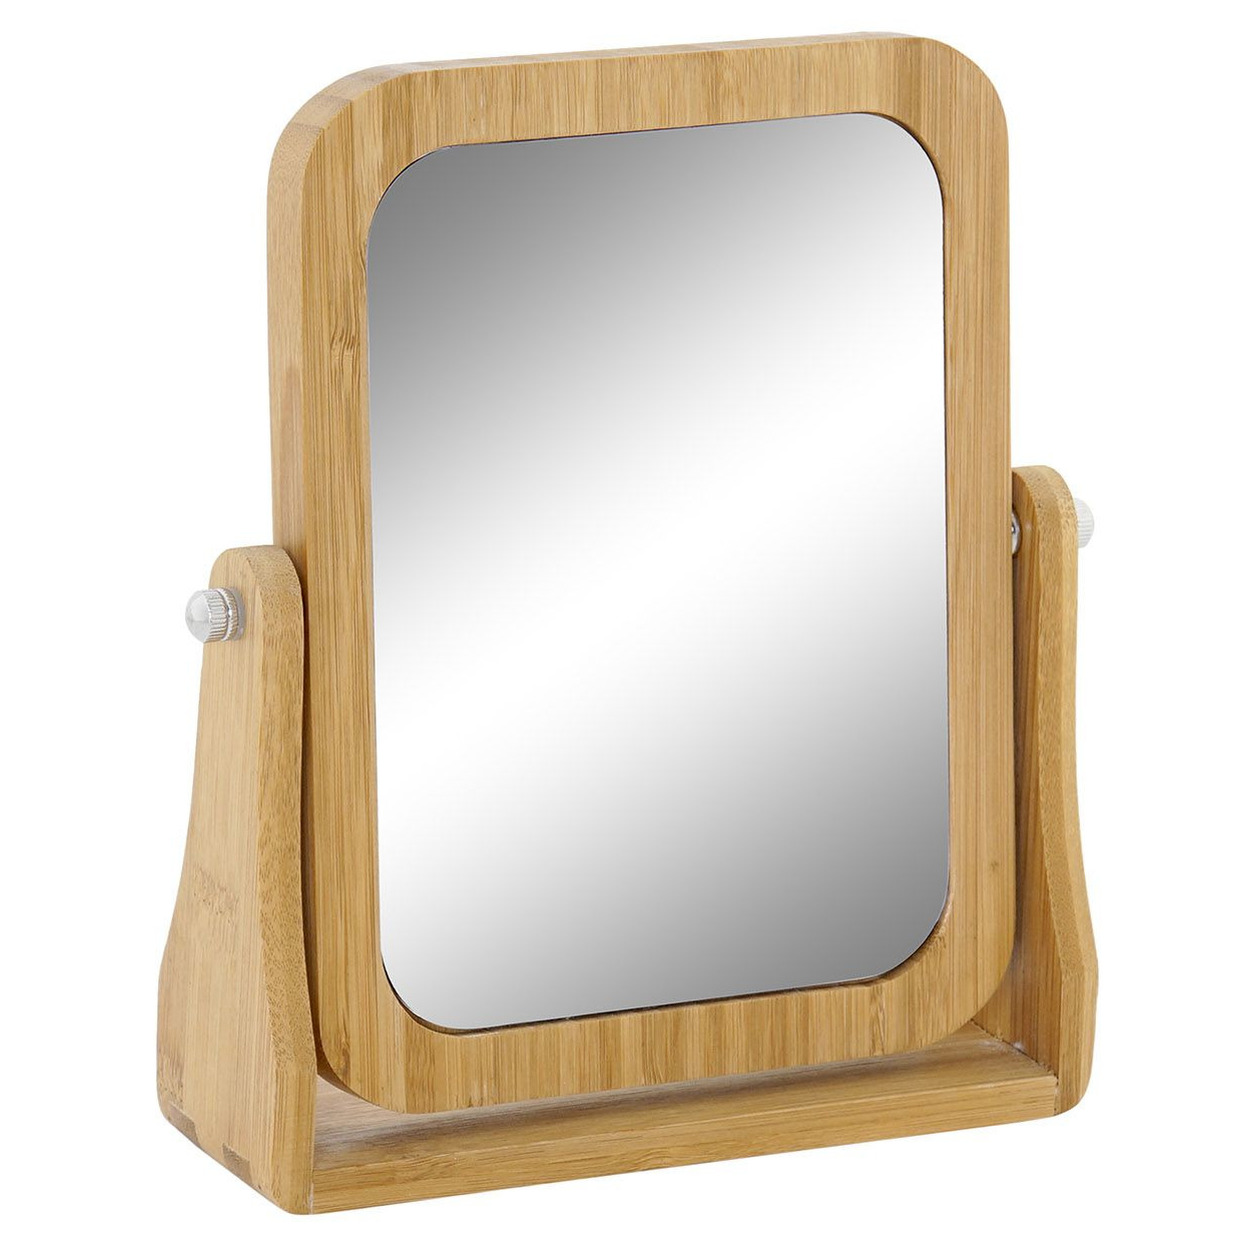 Badkamerspiegel-make-up spiegel bamboe hout 22 x 6 x 22